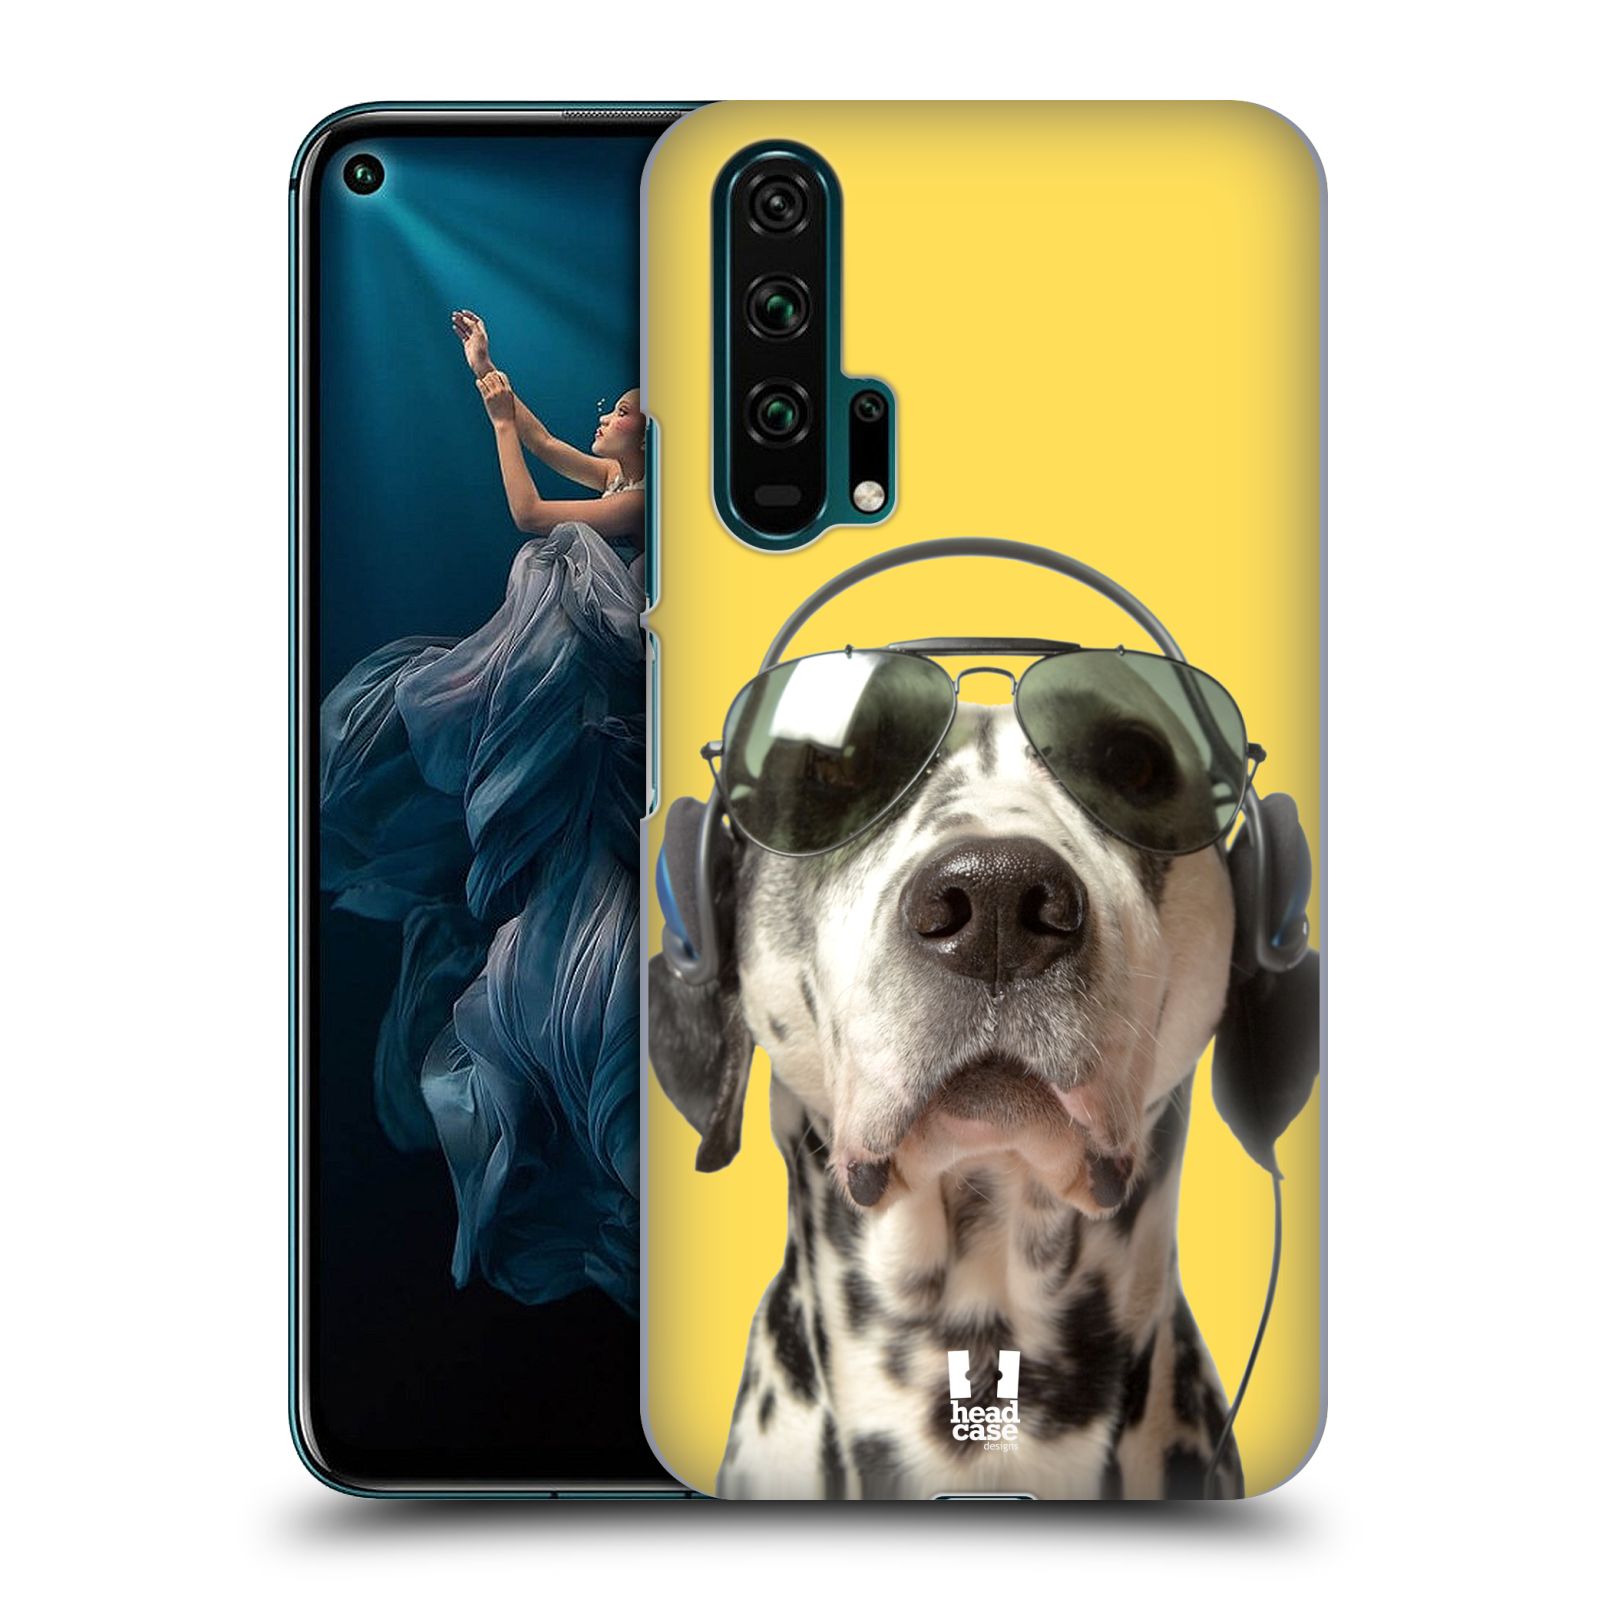 Pouzdro na mobil Honor 20 PRO - HEAD CASE - vzor Legrační zvířátka dalmatin se sluchátky žlutá